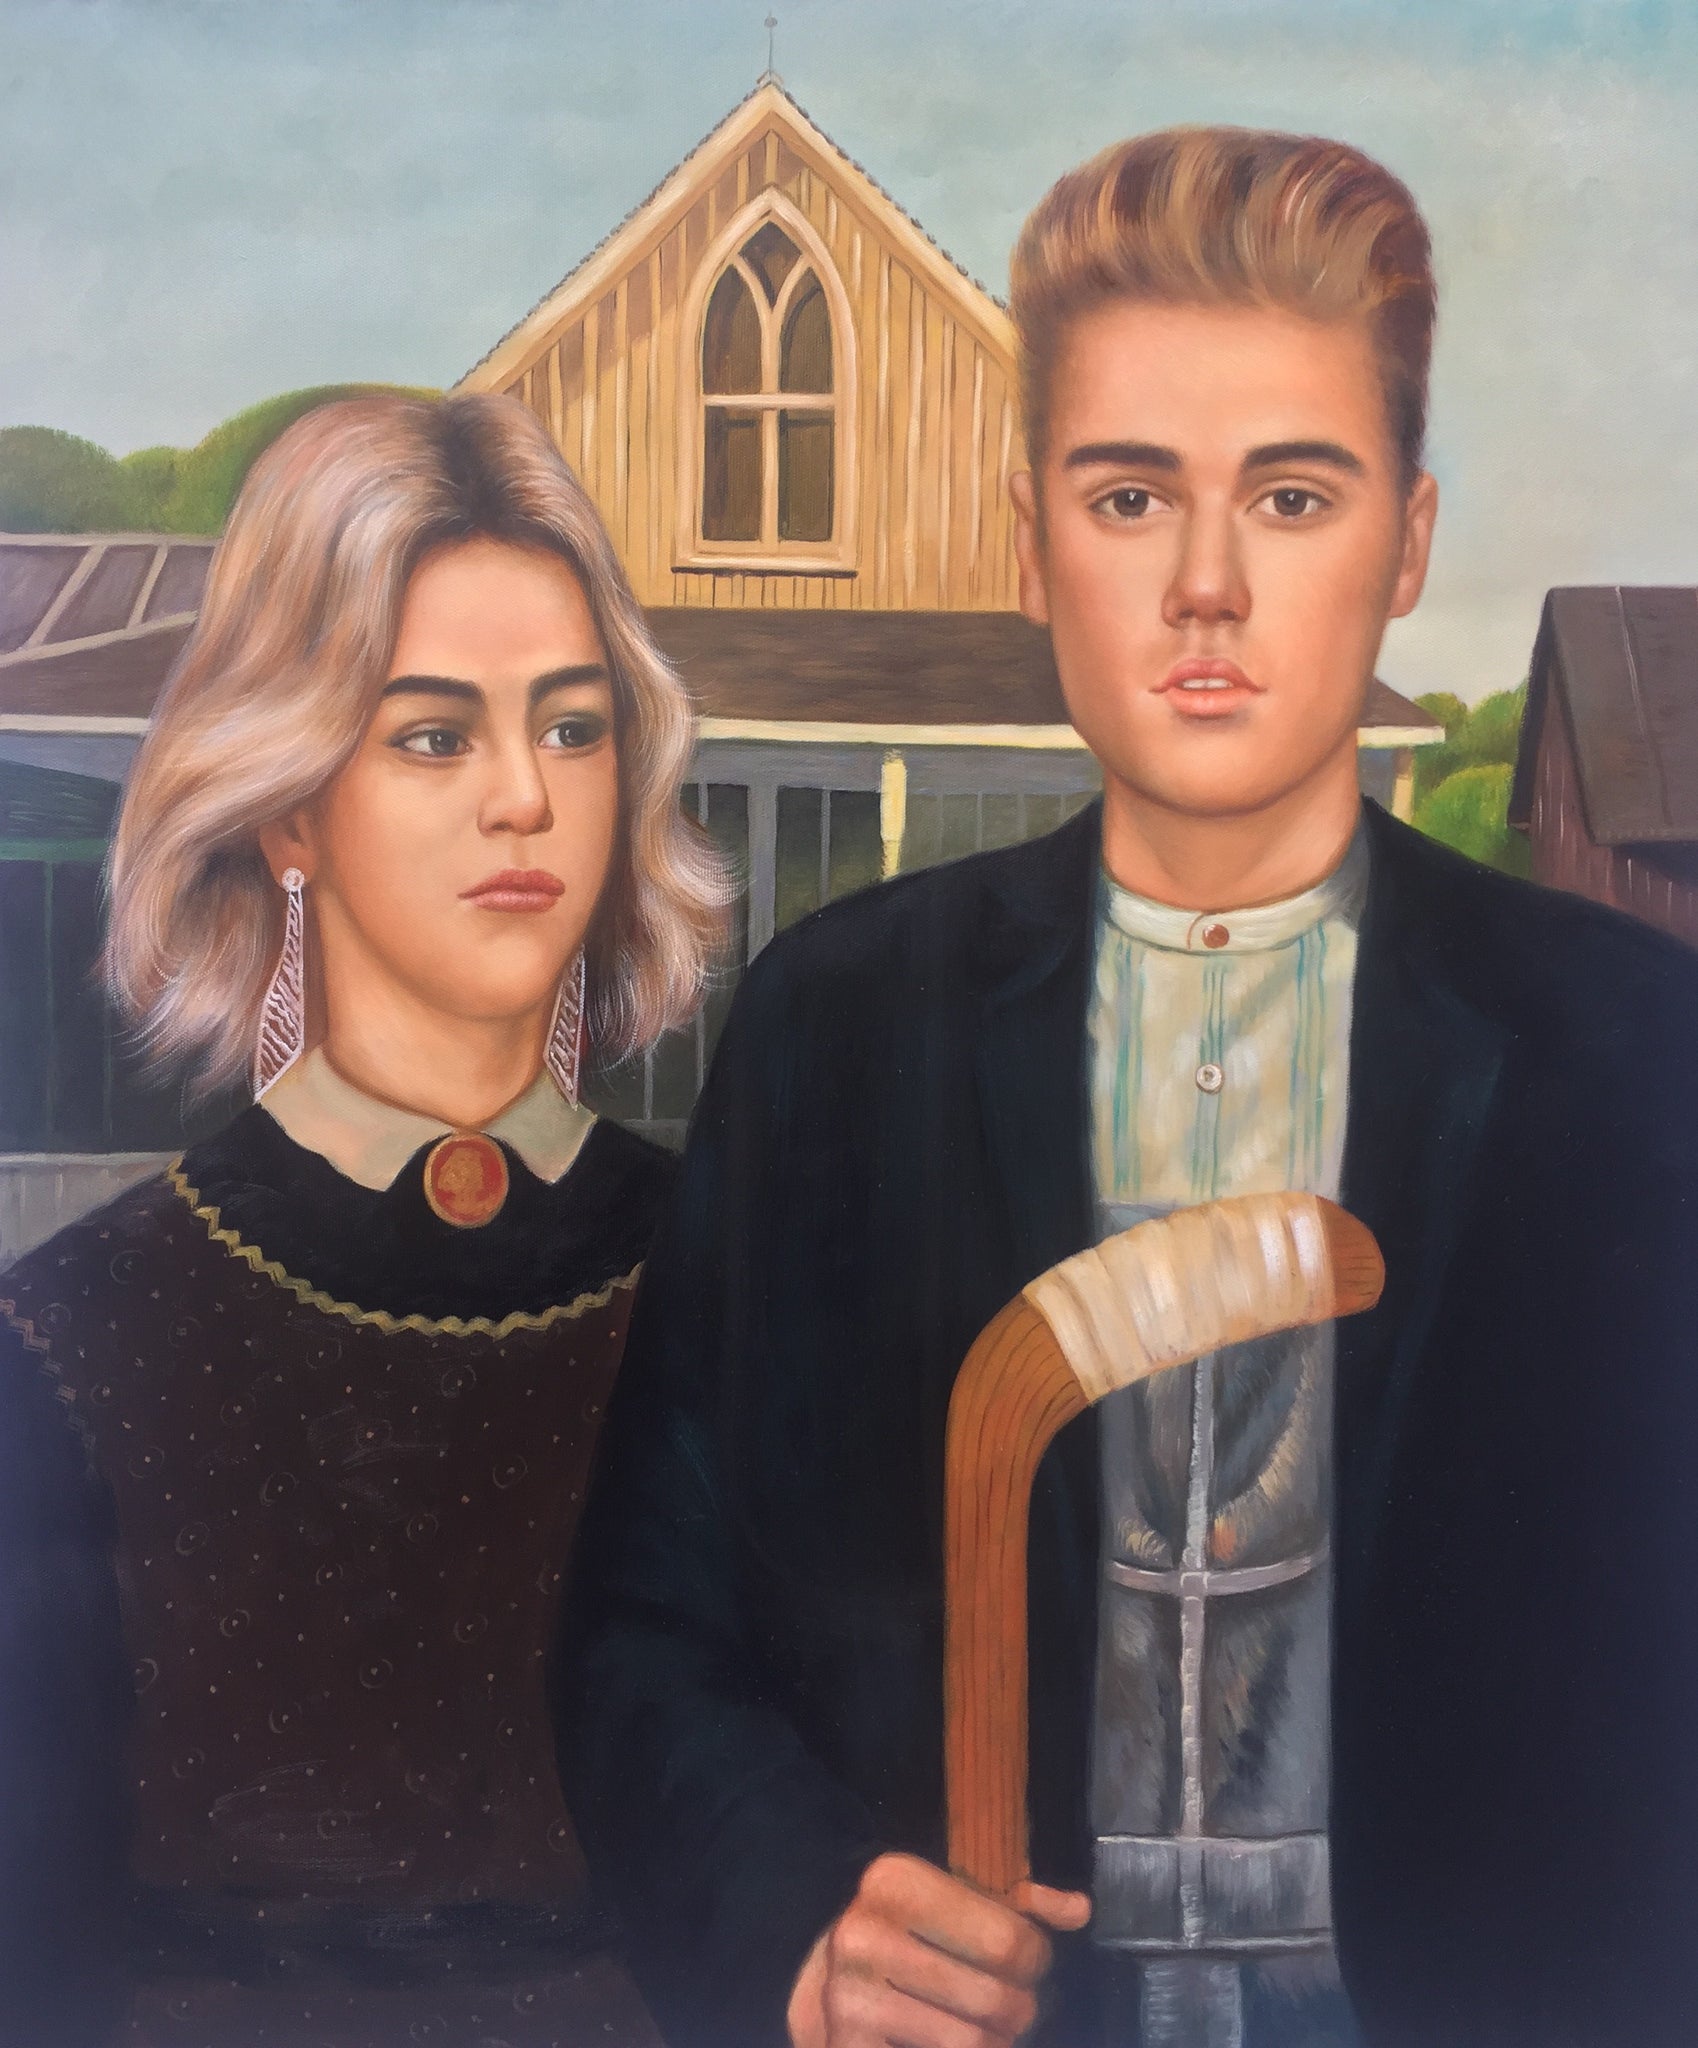 Nueva pintura al óleo celebra la reunión de Bieber-Gomez, estilo ' American Gothic '